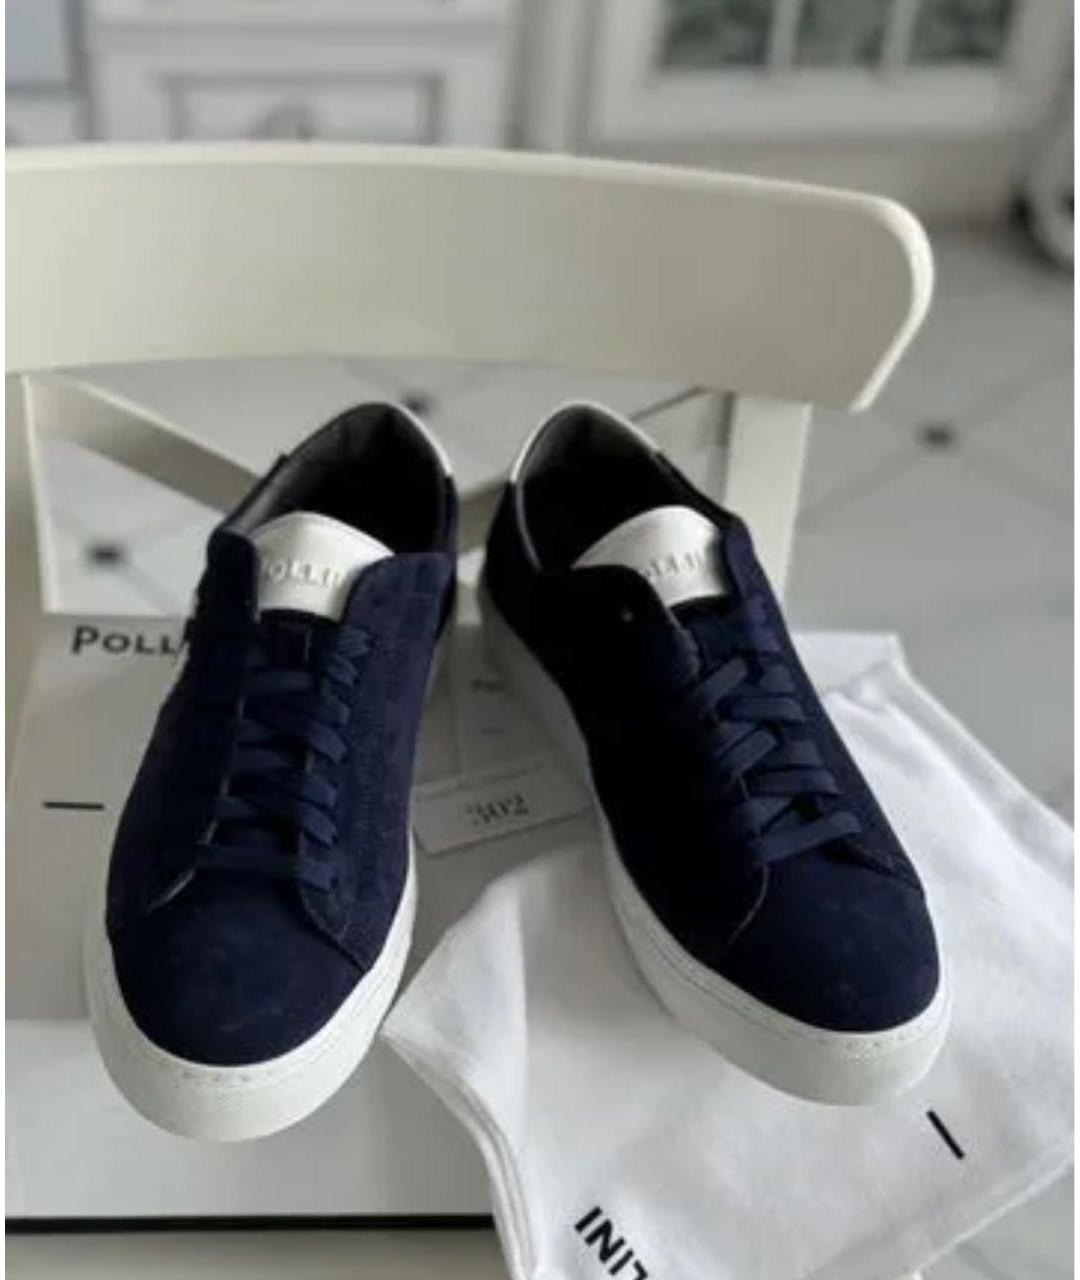 POLLINI Темно-синие замшевые низкие кроссовки / кеды, фото 2